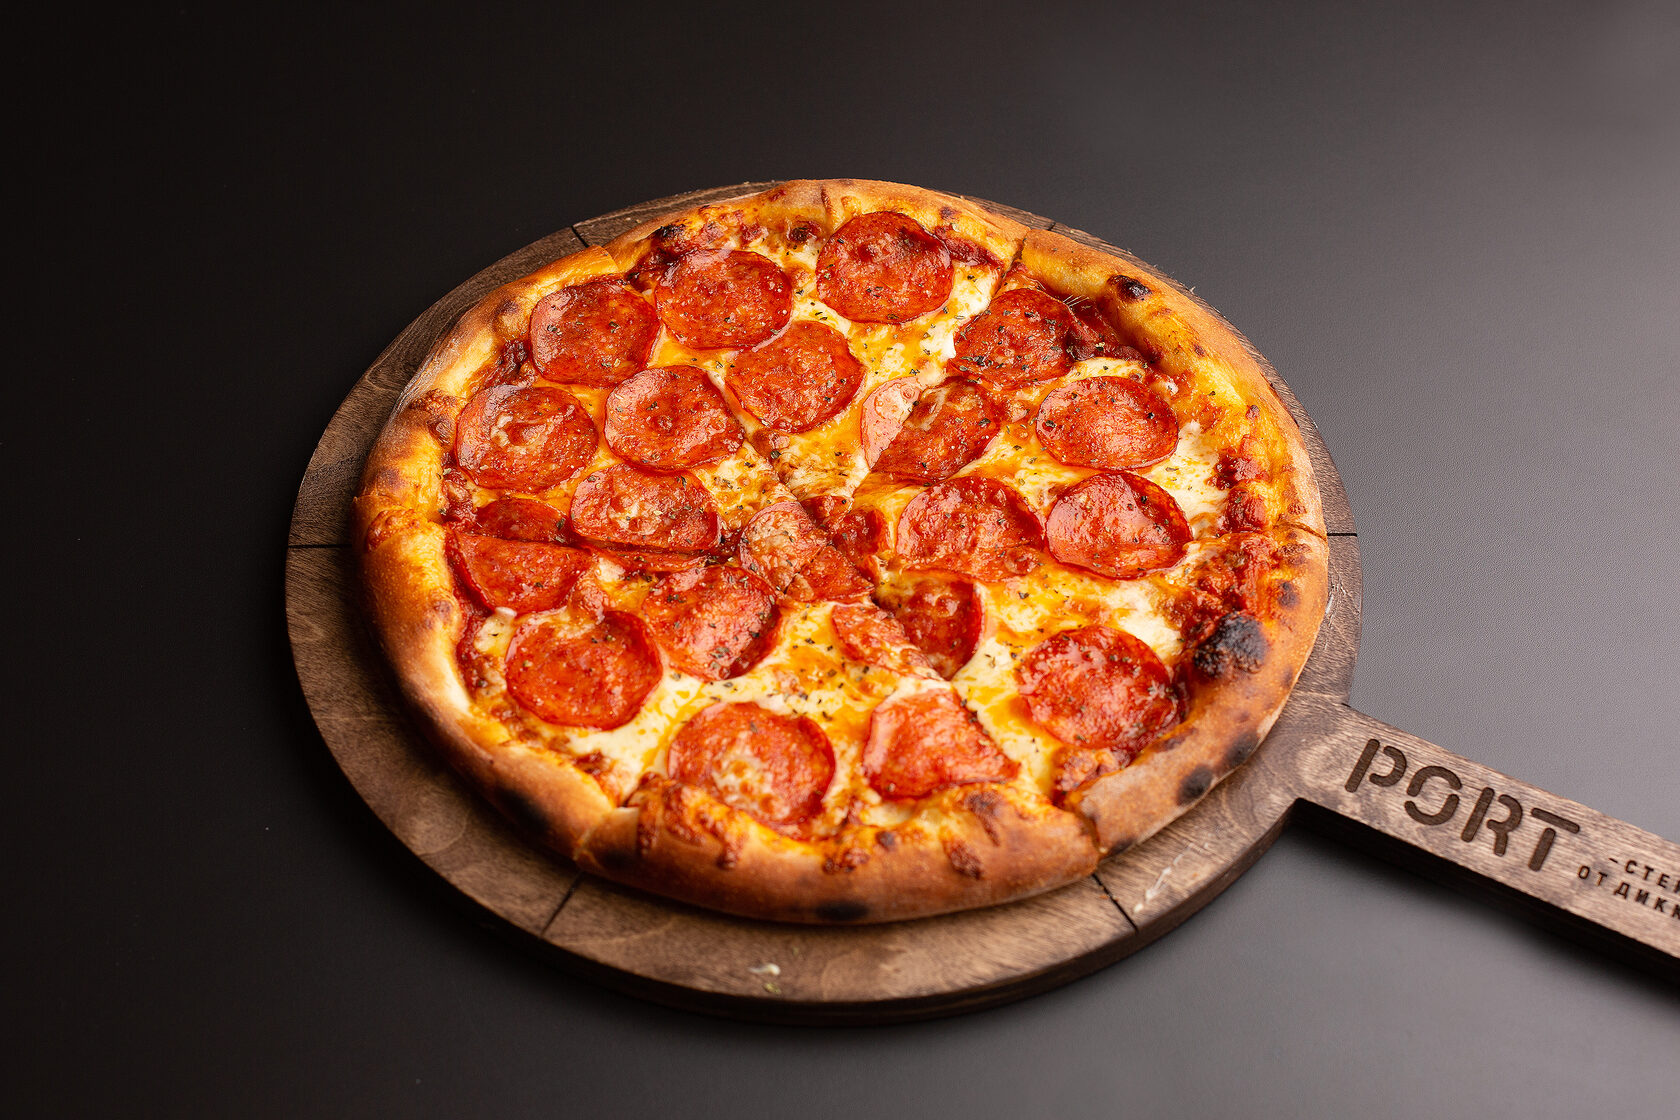 технология приготовления пиццы пепперони фото 106